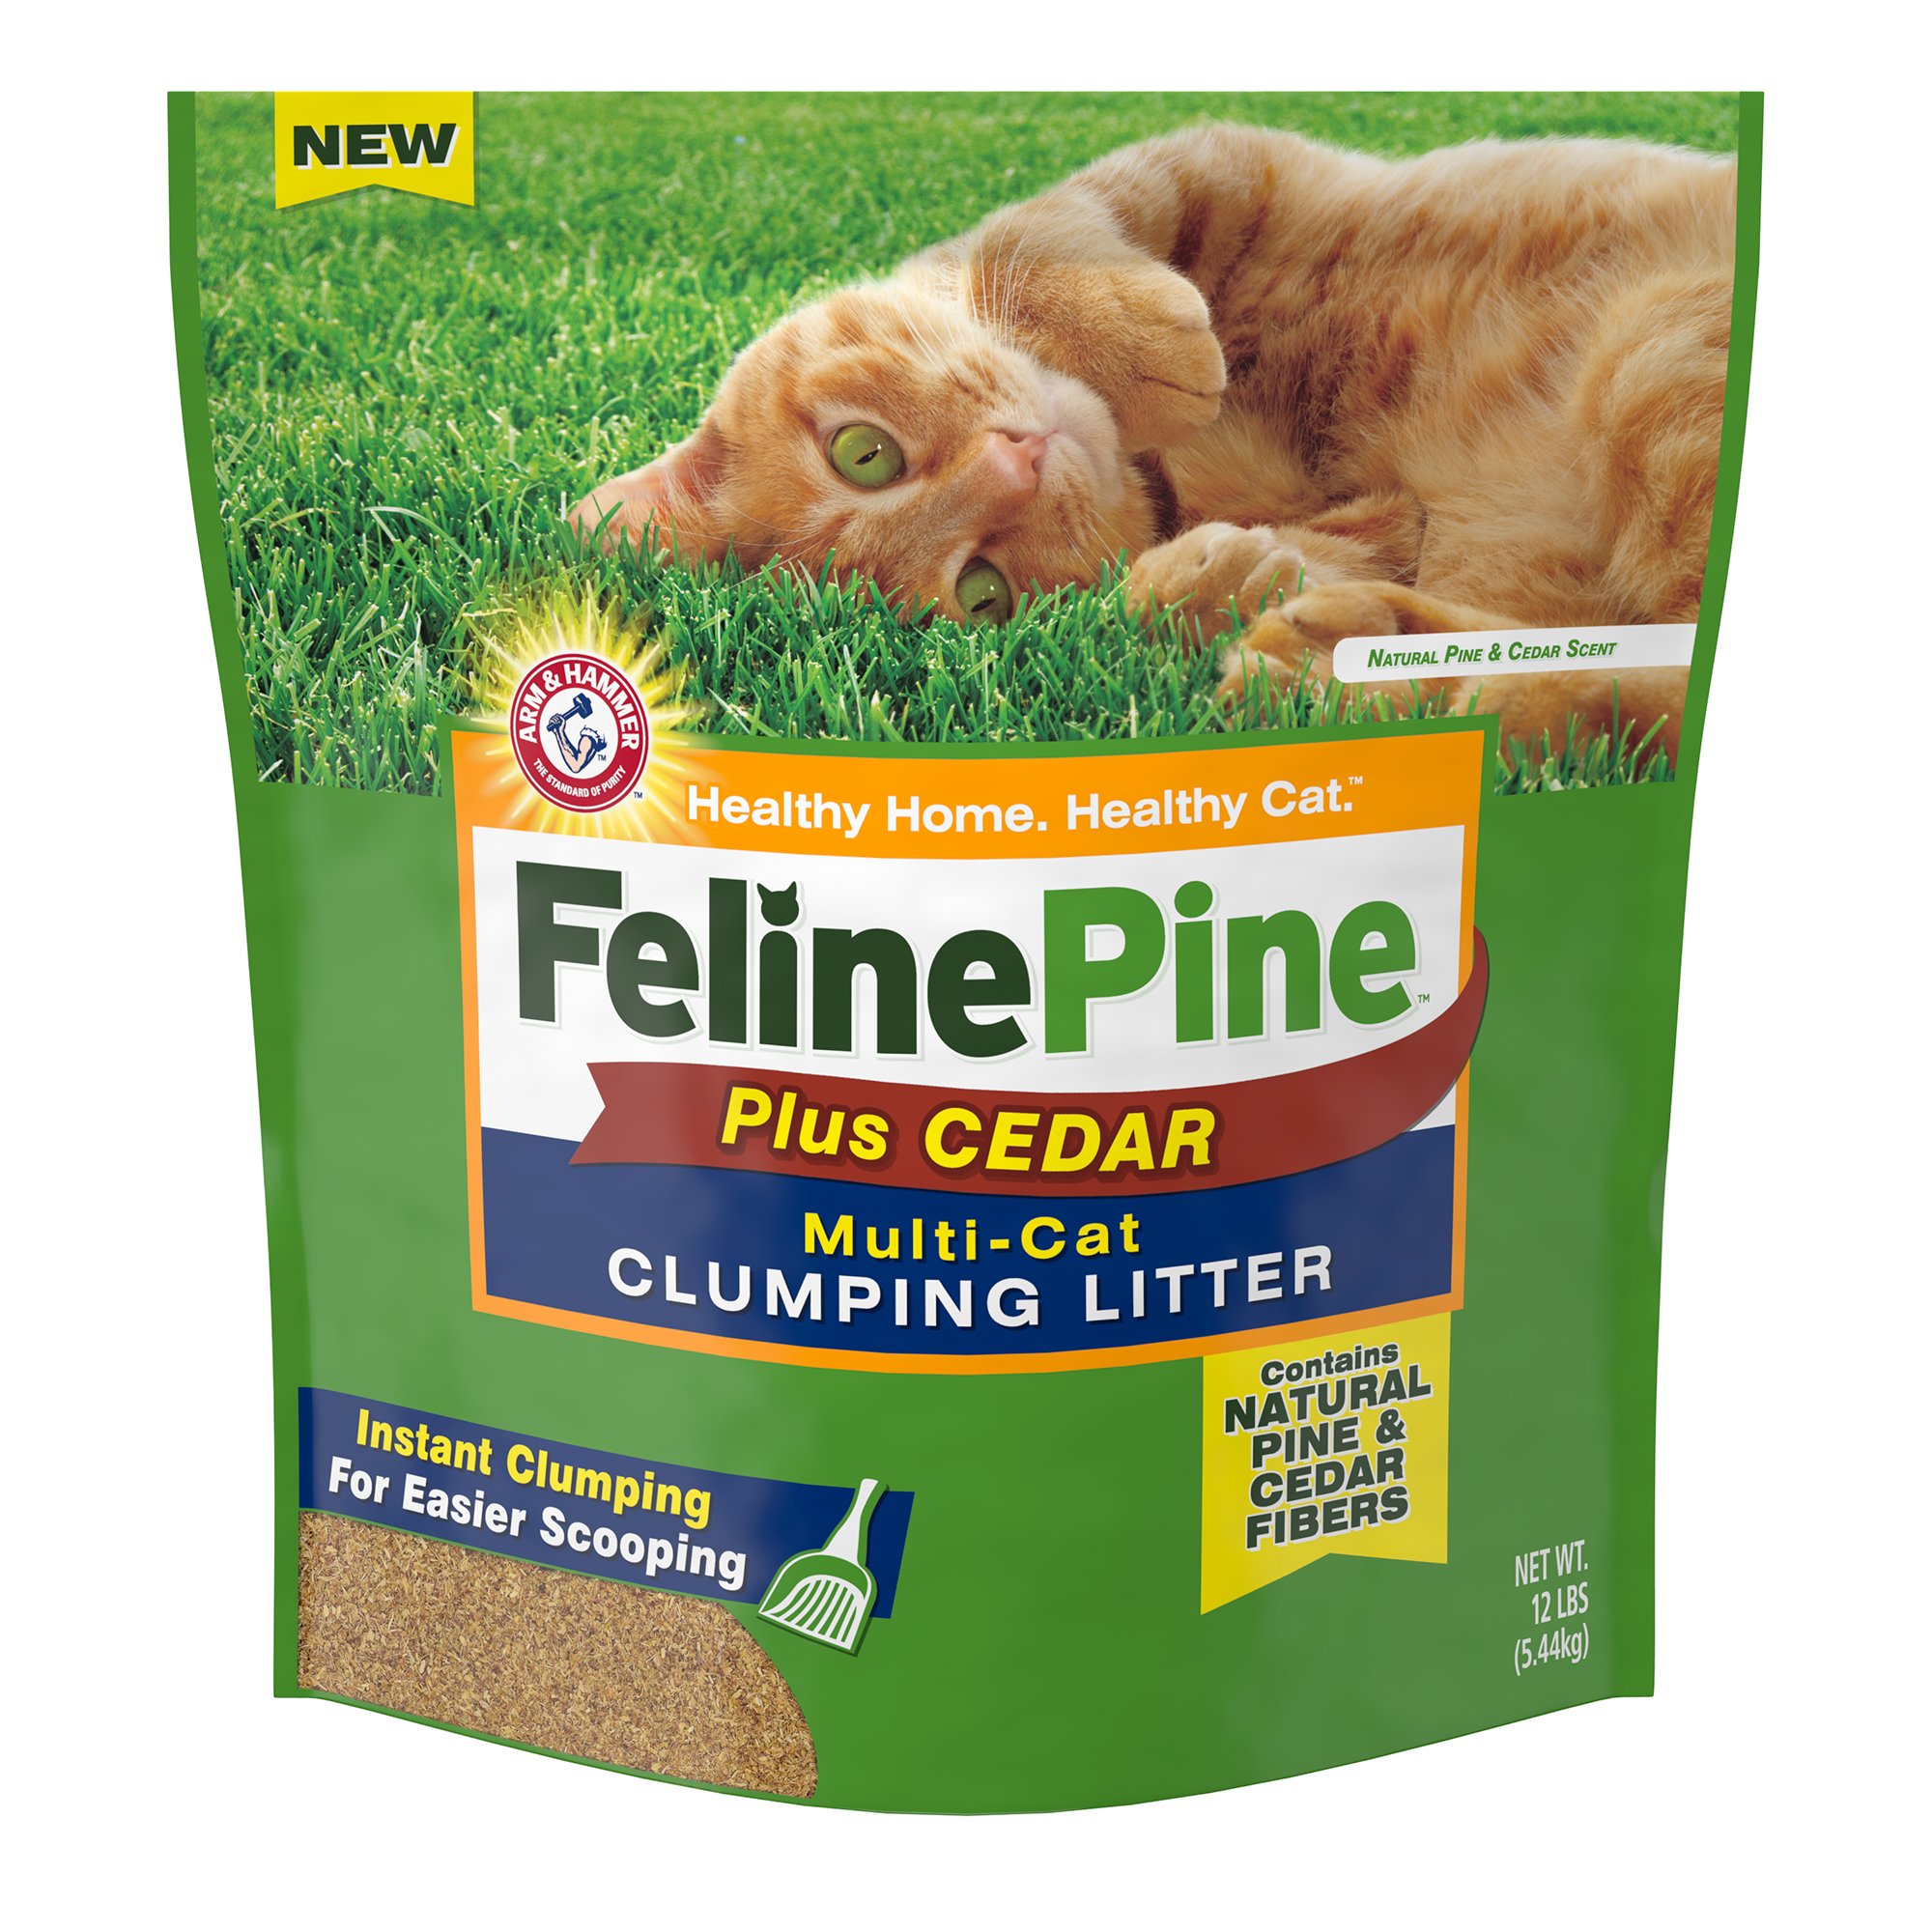 UPC 764375209412 Feline Pine Plus Cedar Natural Clumping Litter, 12